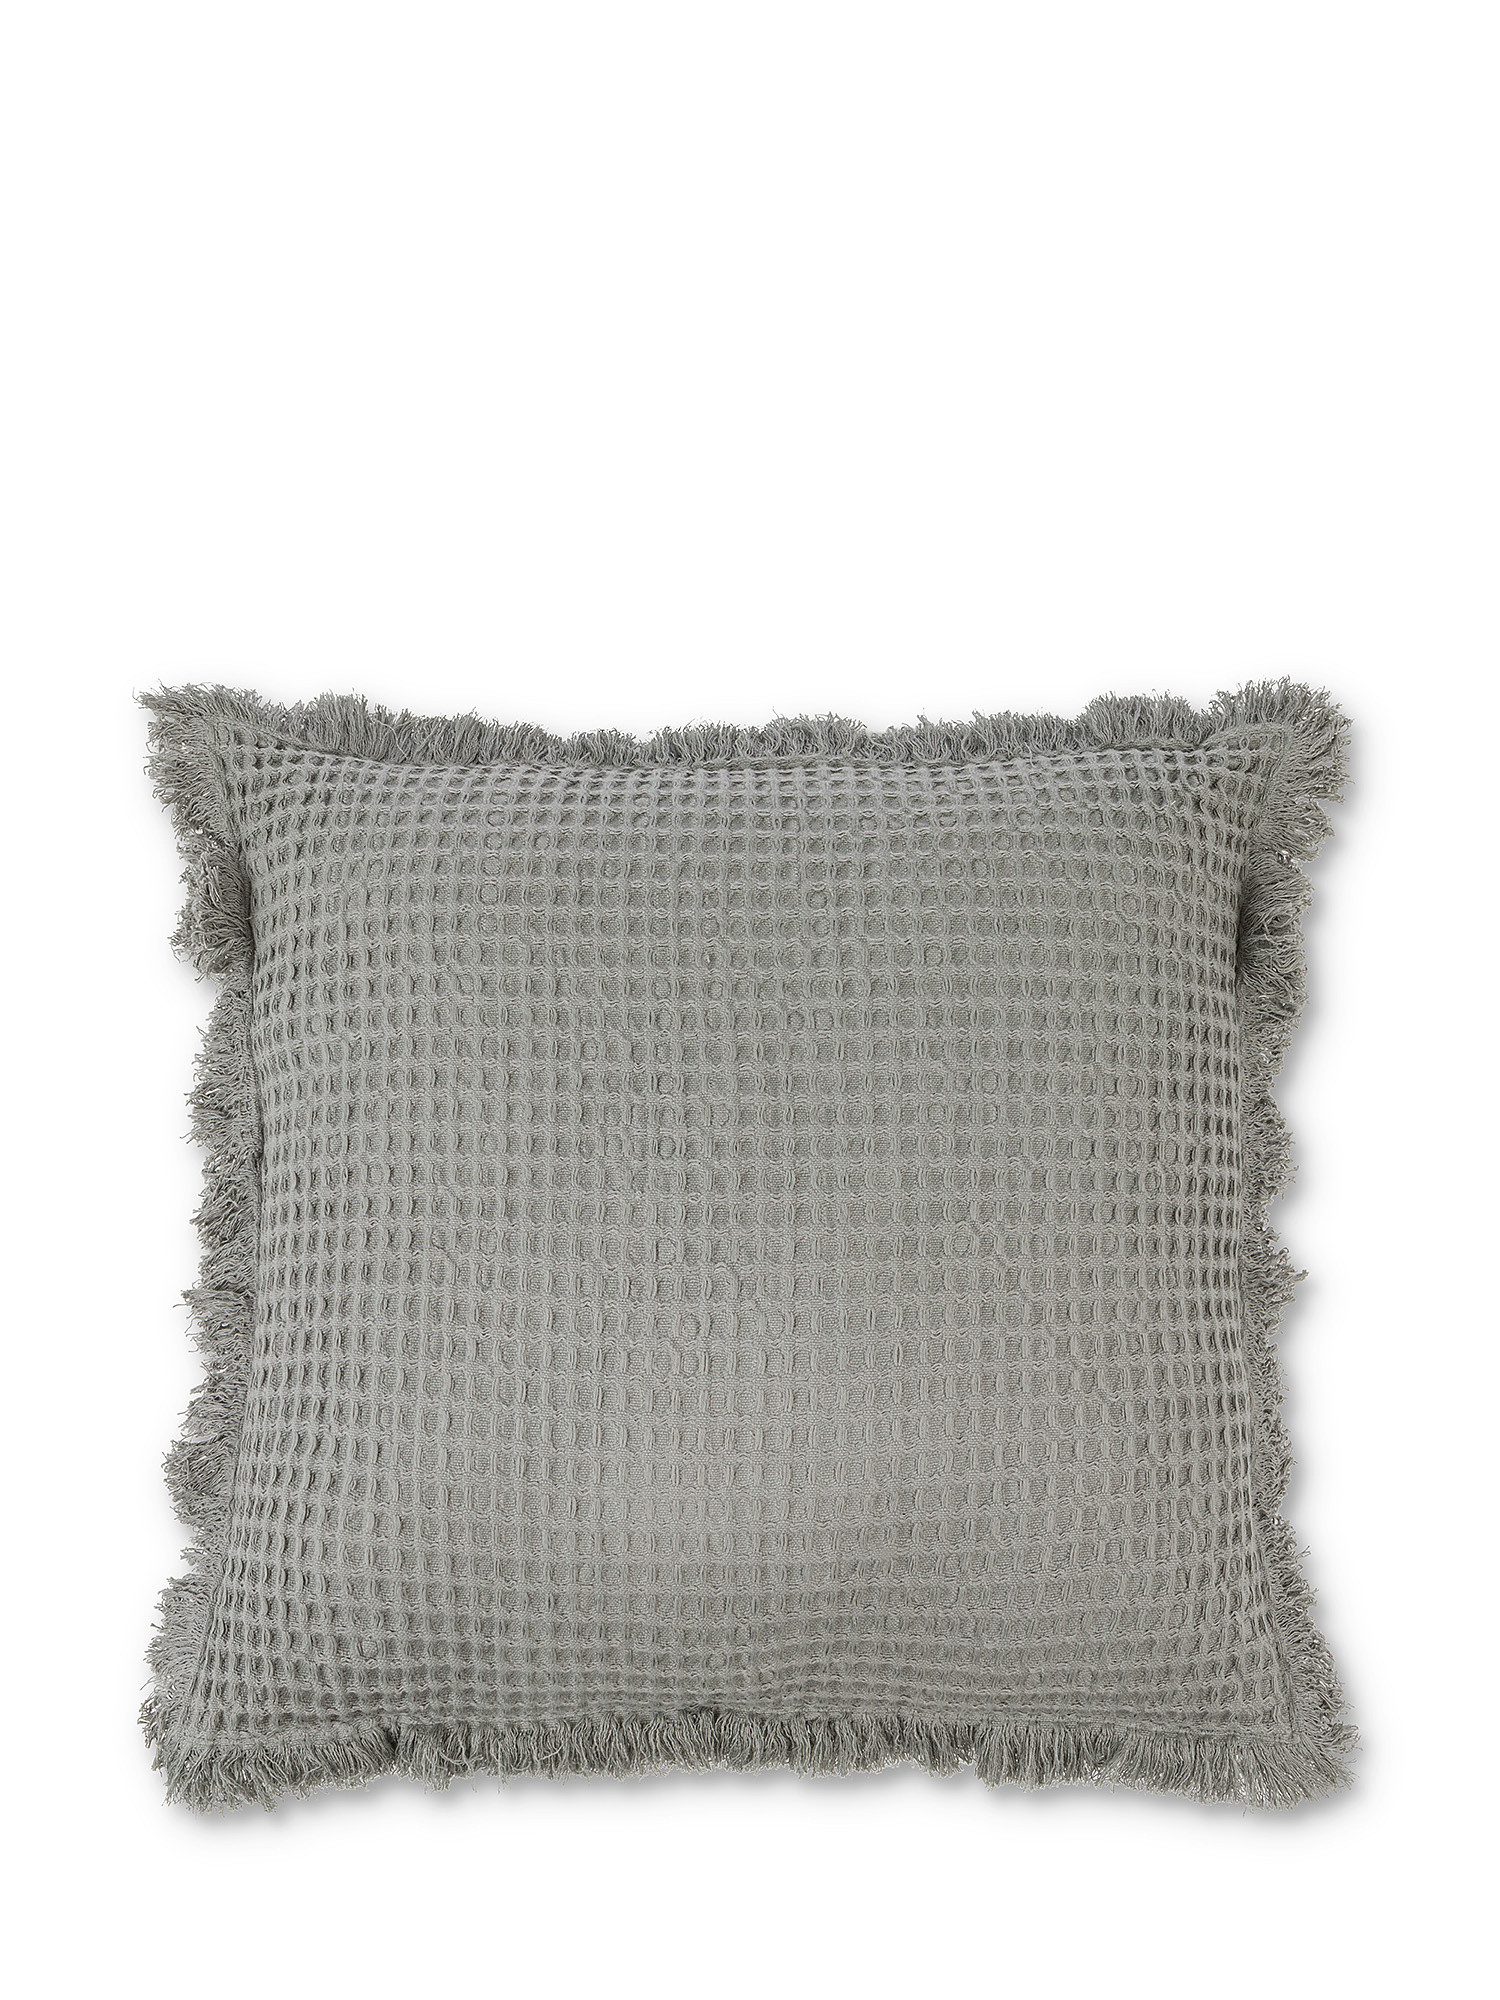 Honeycomb cotton cushion 45x45cm, Grey, large image number 0